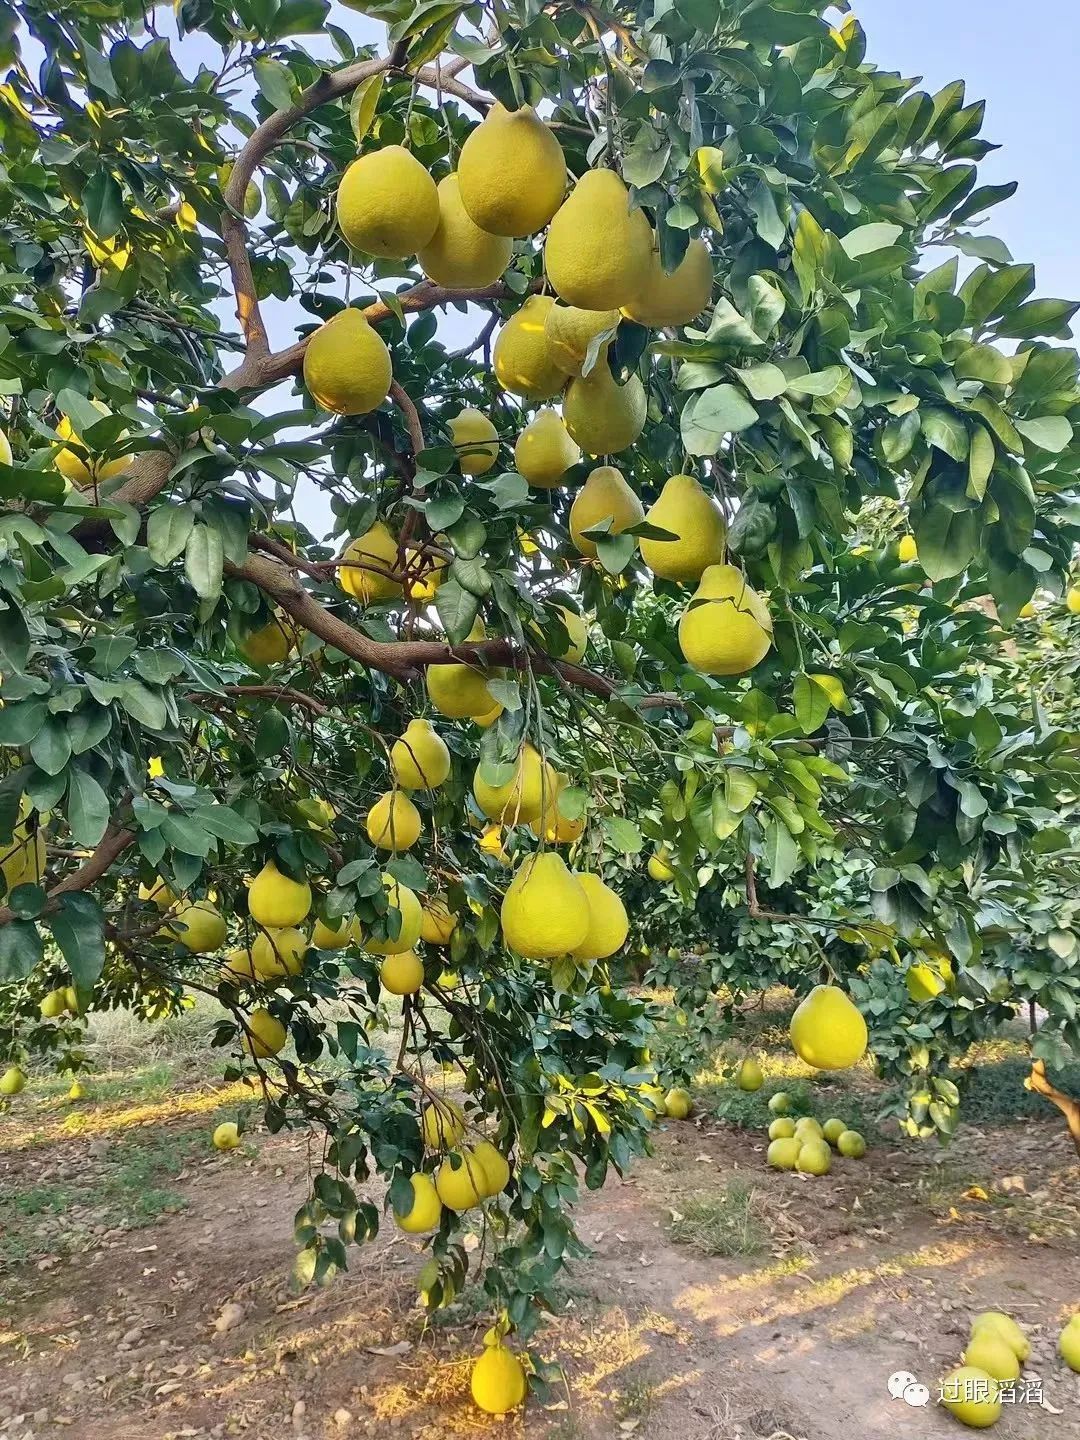 “金柚之乡”梅州最古老的柚树在哪里？跟着南方+来尝金柚第一味_南方plus_南方+